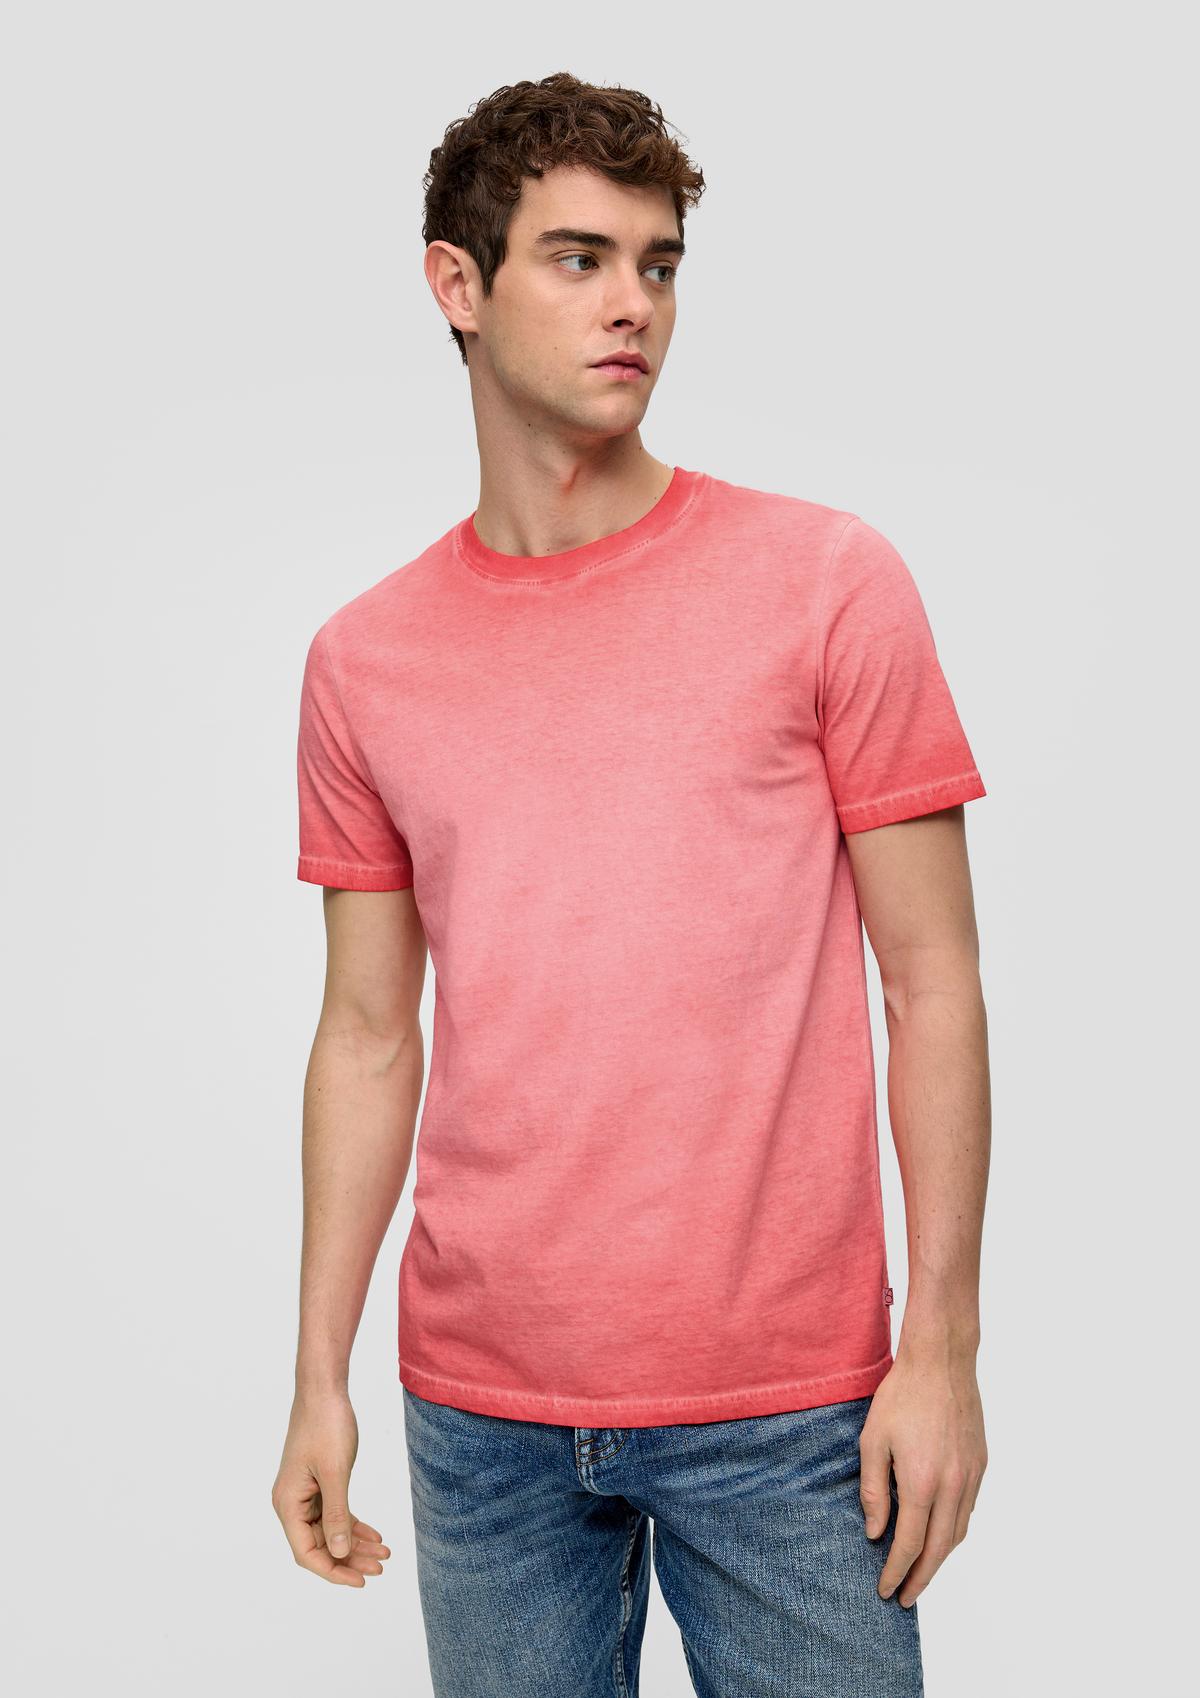 Garment-dyed katoenen shirt